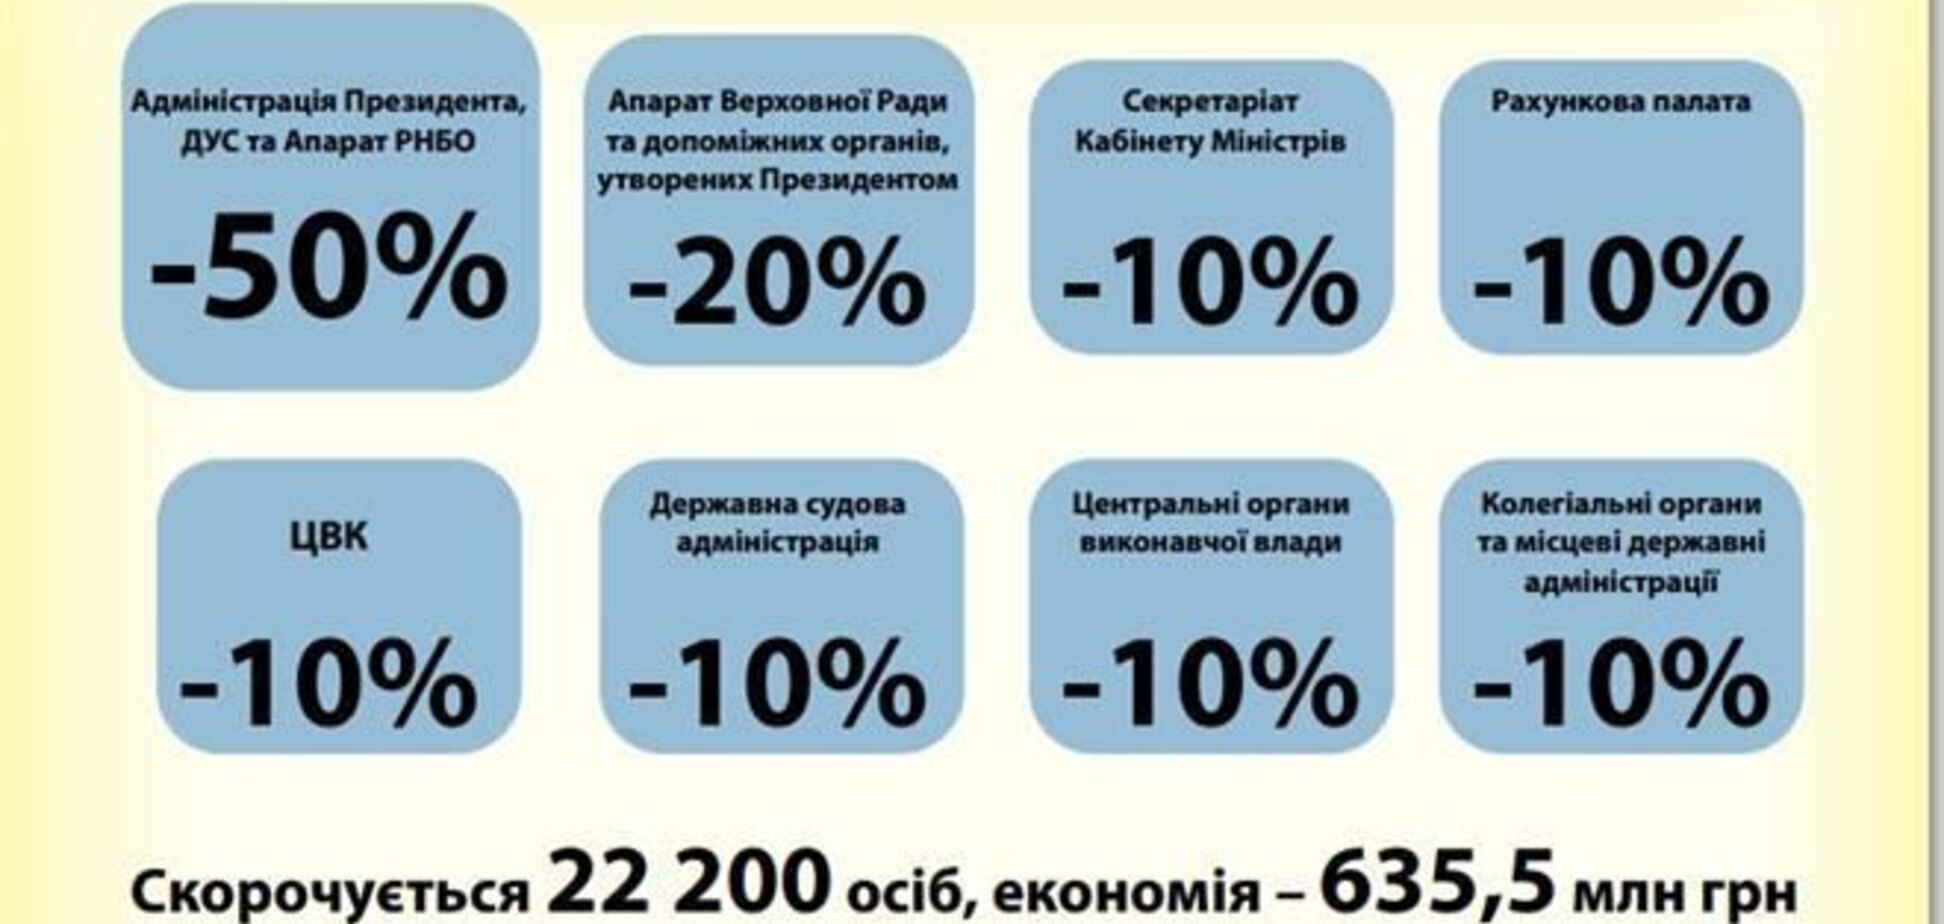 У Яценюка надеются сэкономить на сокращении 10% чиновников 635 млн грн